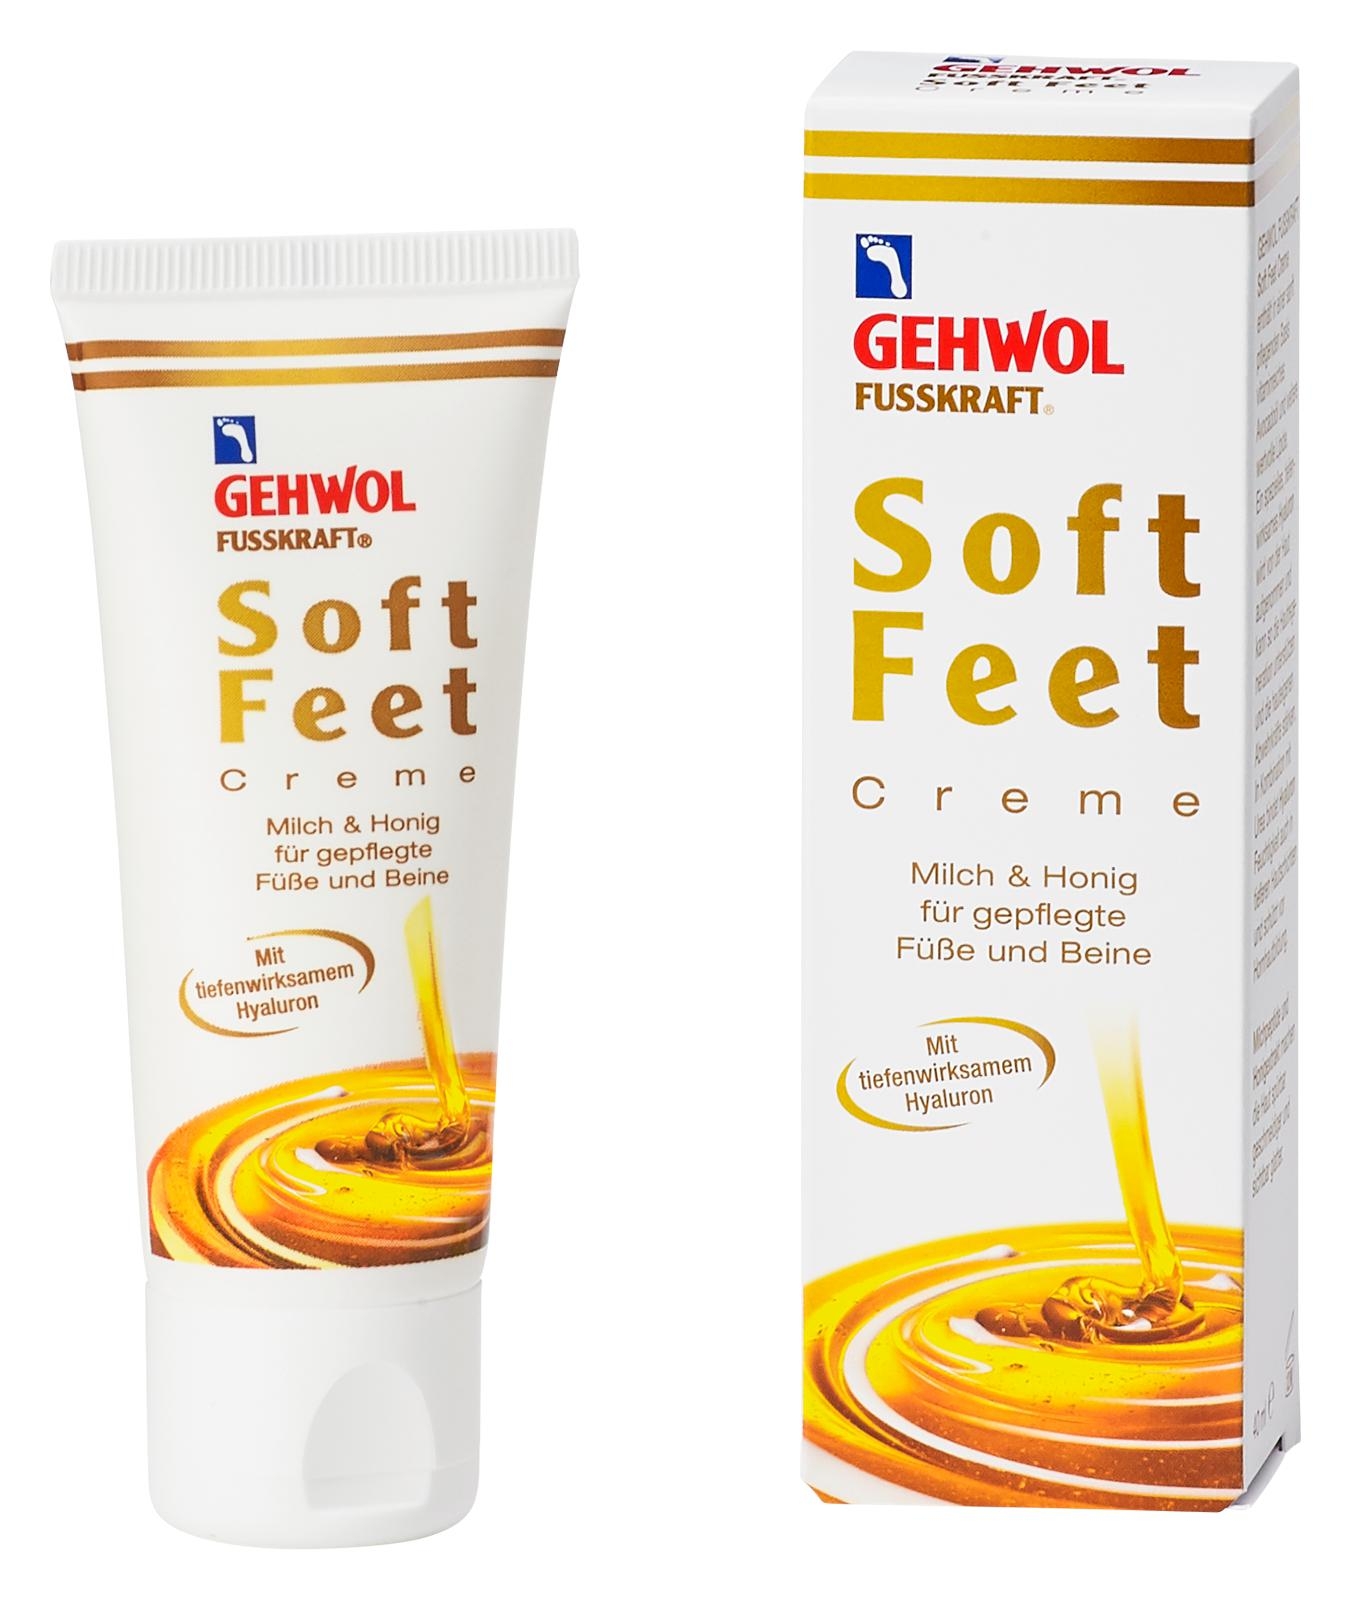 GEHWOL FUSSKRAFT Soft Feet Creme mit Milch & Honig 125 ml (Staffelpreis)